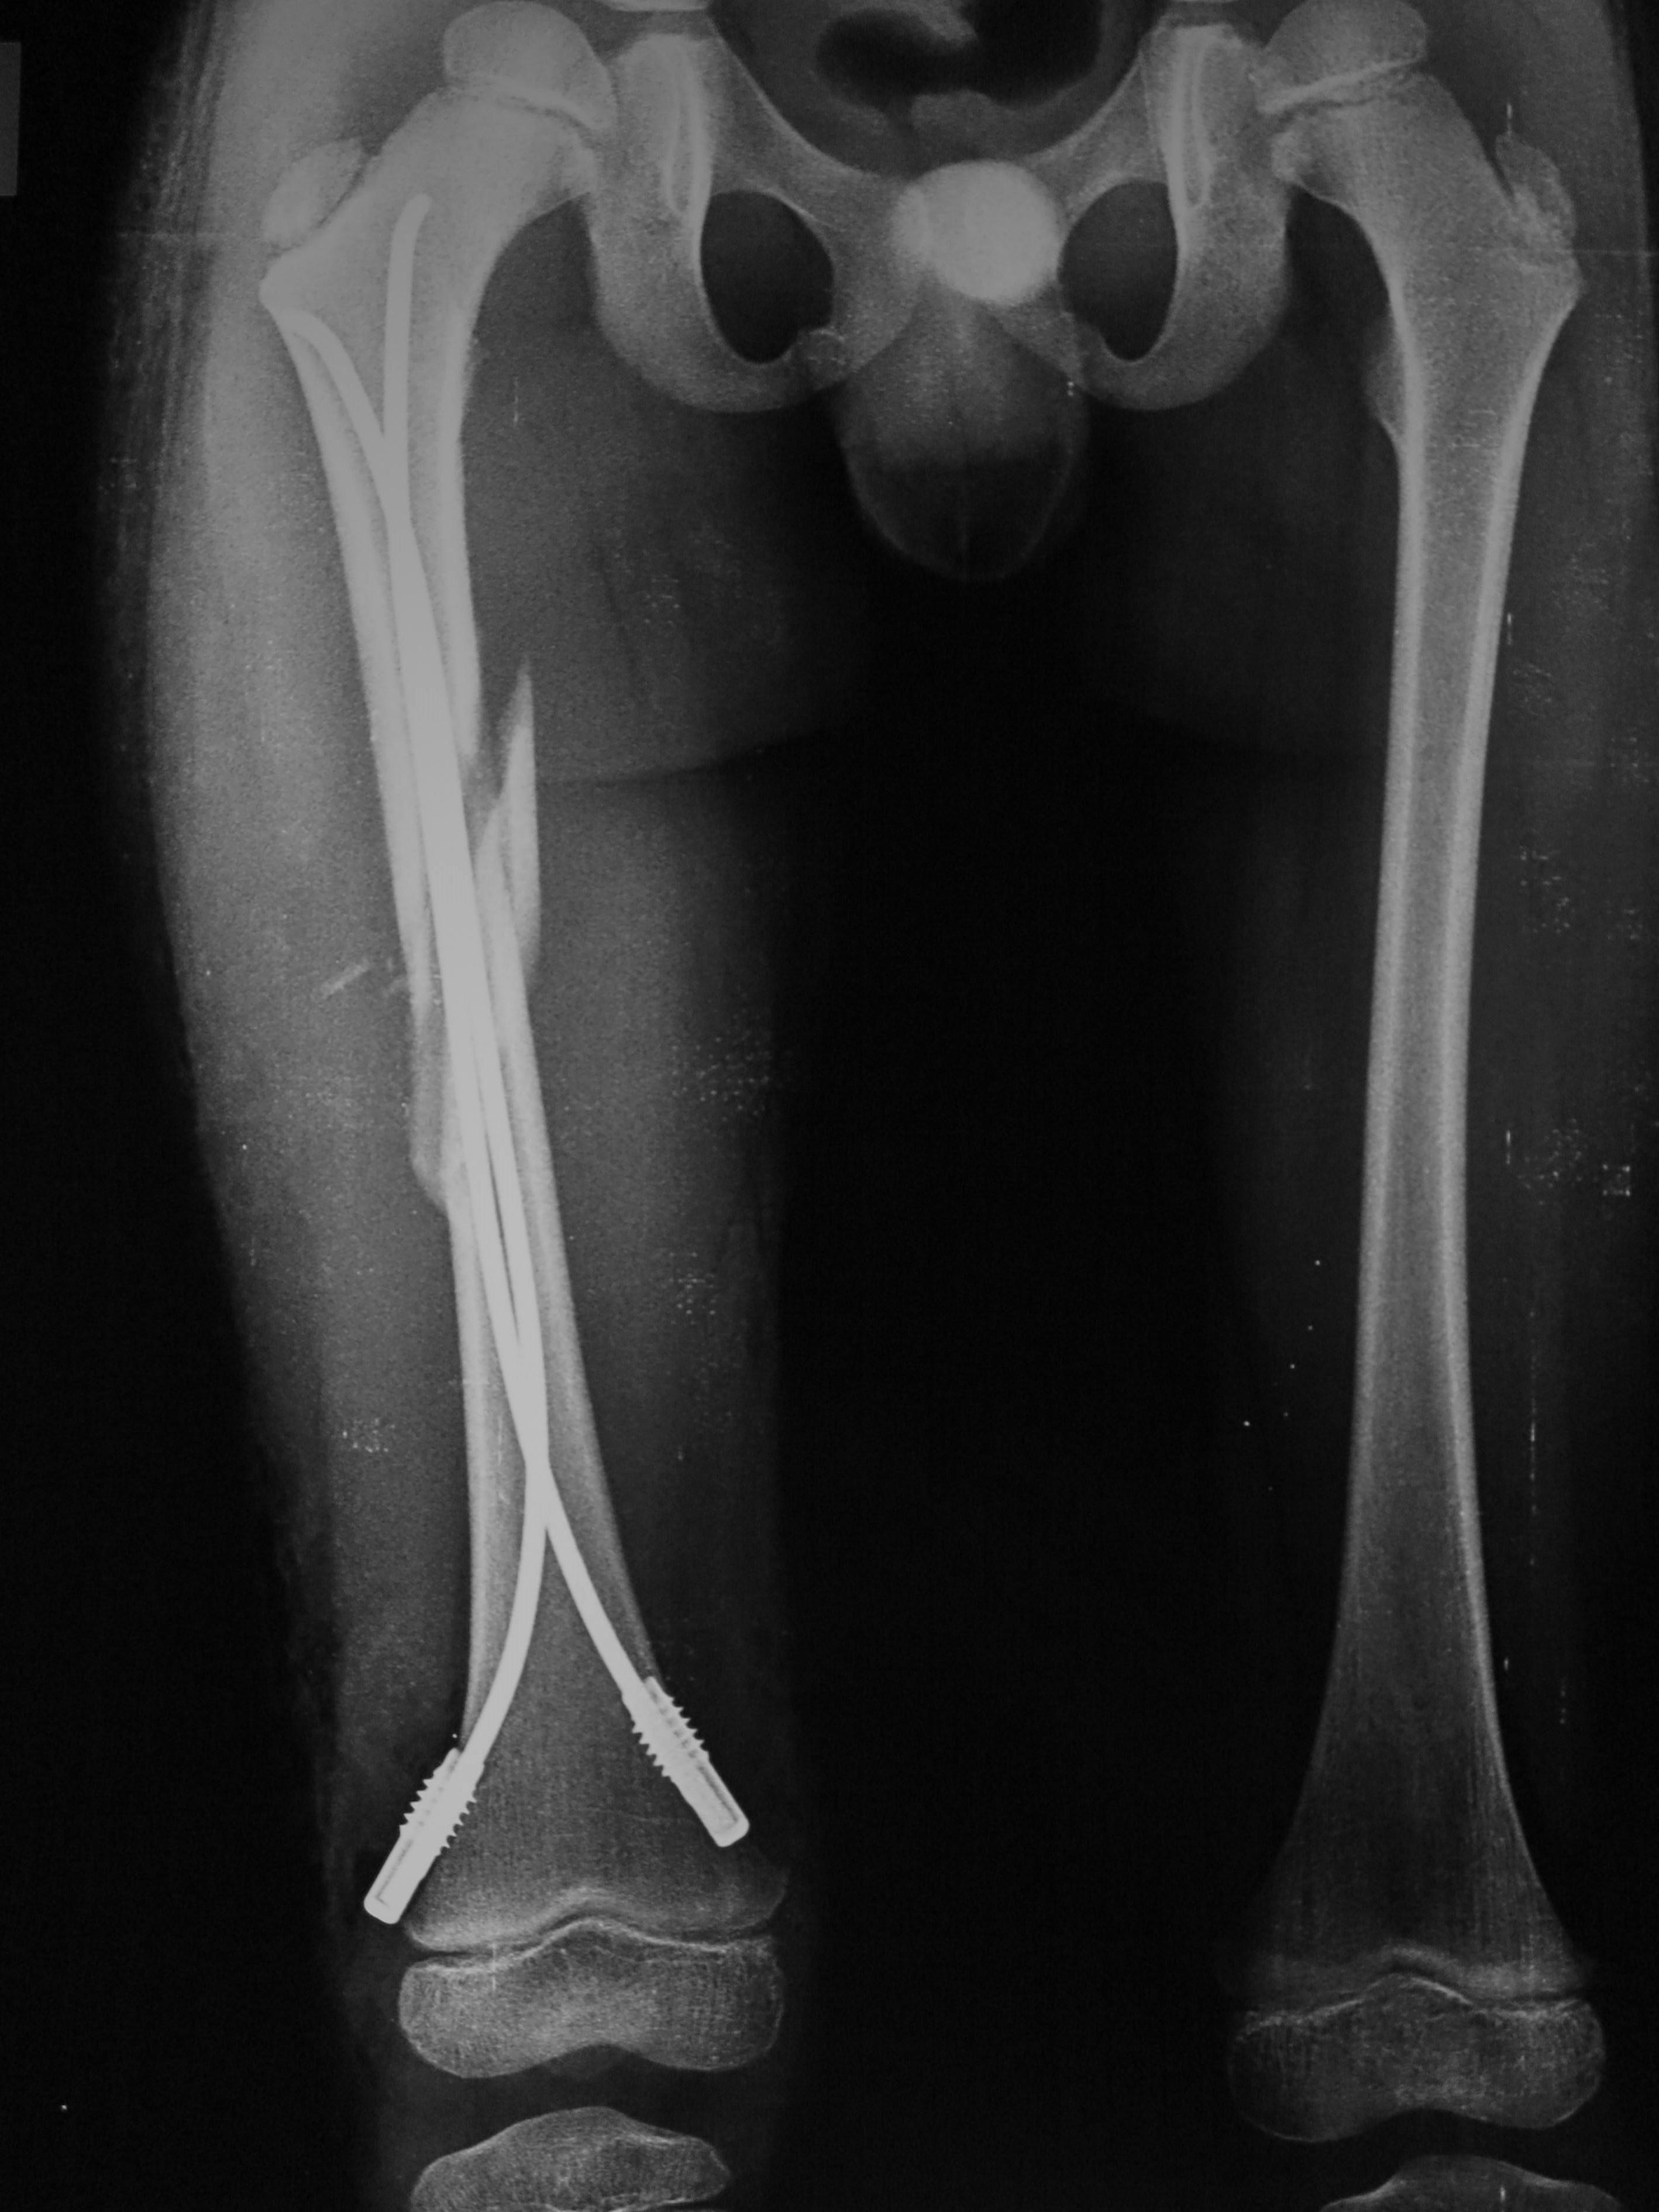 一例股骨干中下段螺旋骨折的倒打髓内钉治疗